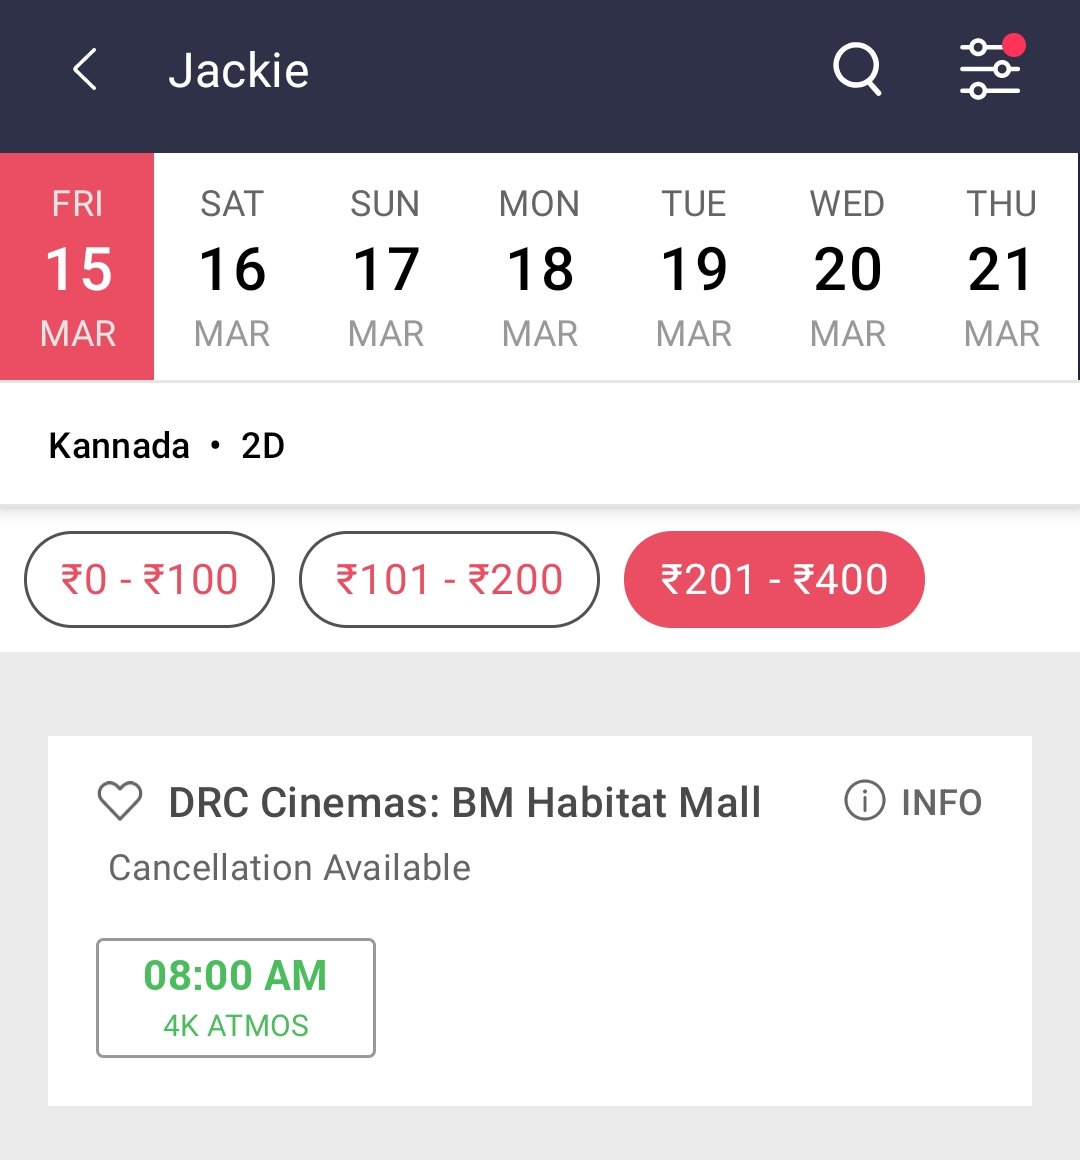 DRC Cinemas Bookings Opened For Jackie 💥

Mysurians Let's Go.....!

#DrPuneethRajkumar #JackieReRelease